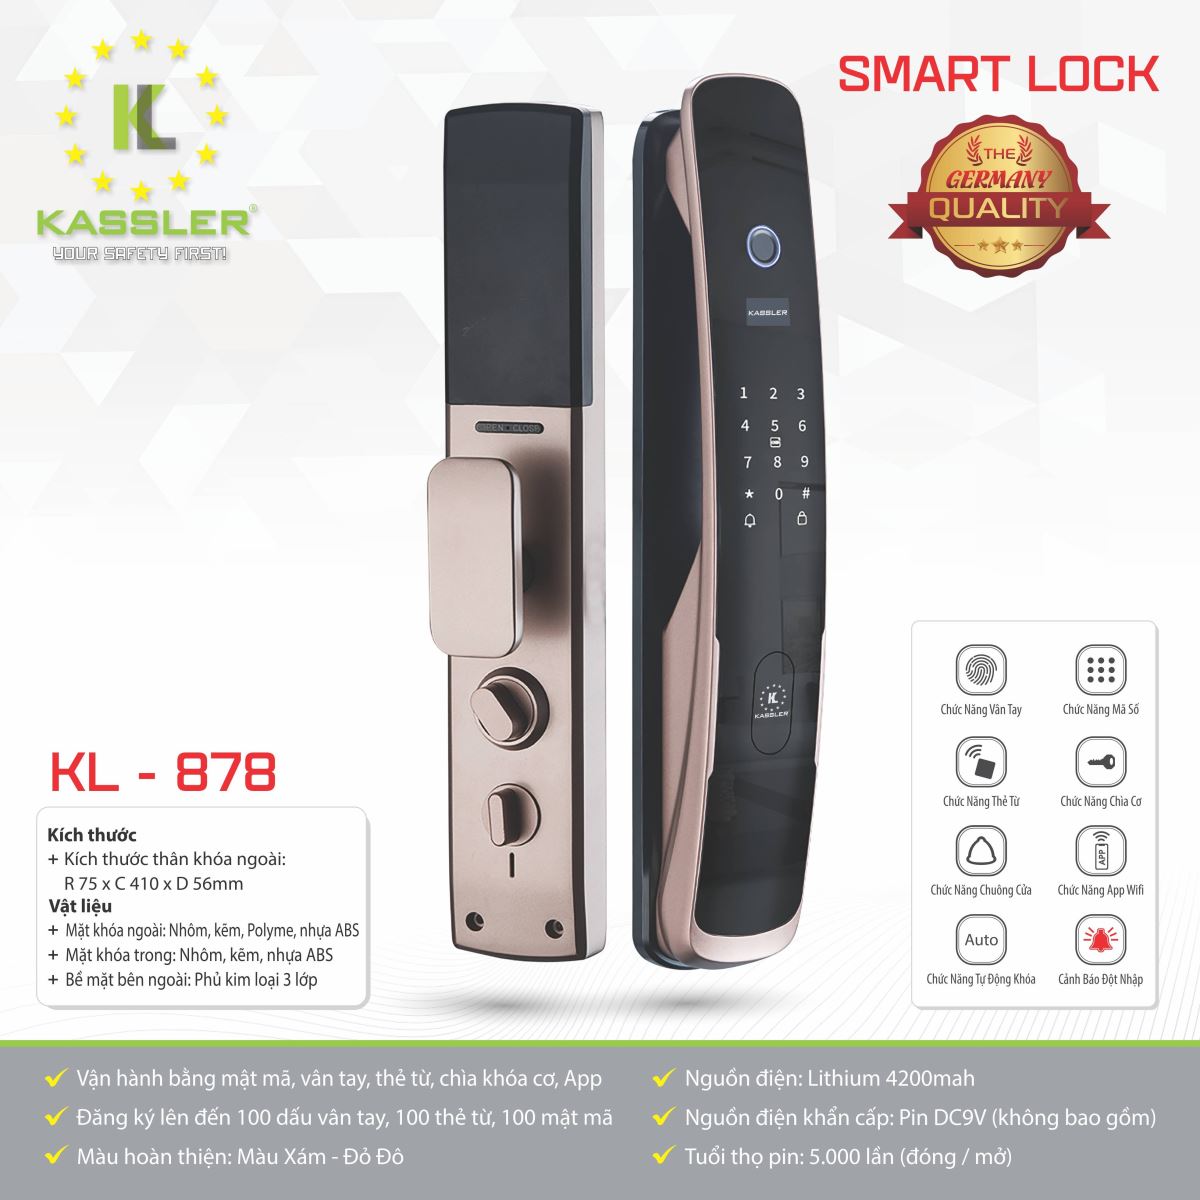 Khóa vân tay Kassler KL-878- Mở bằng APP điện thoại